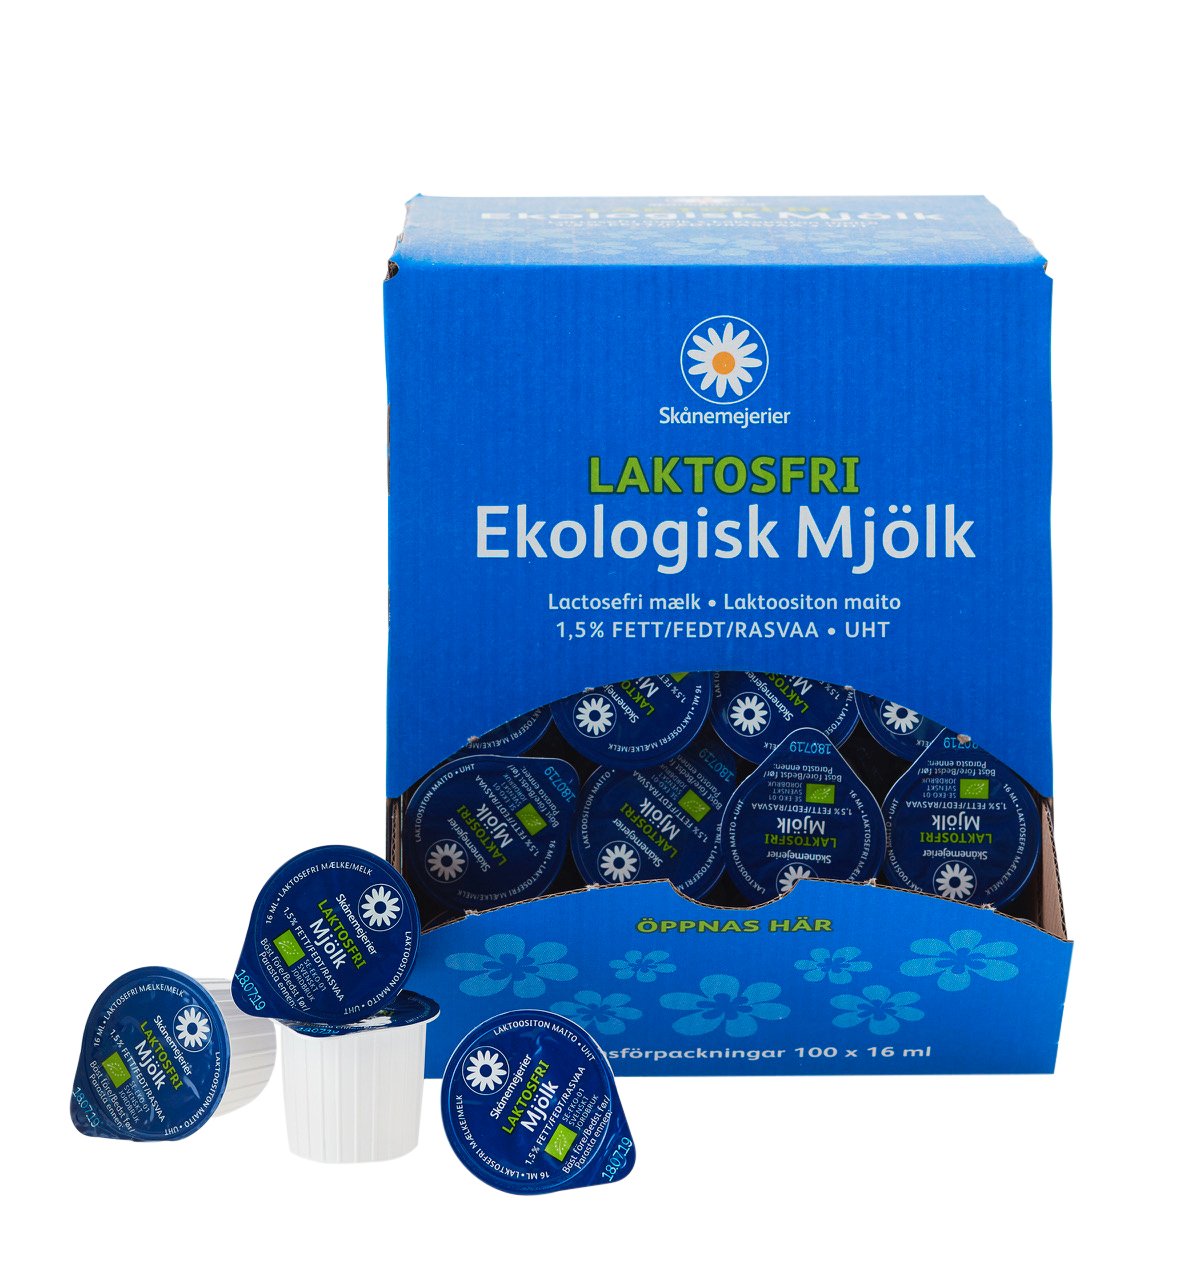 Kaffemjölk Skånemejerier laktosfri ekologisk 1,6cl